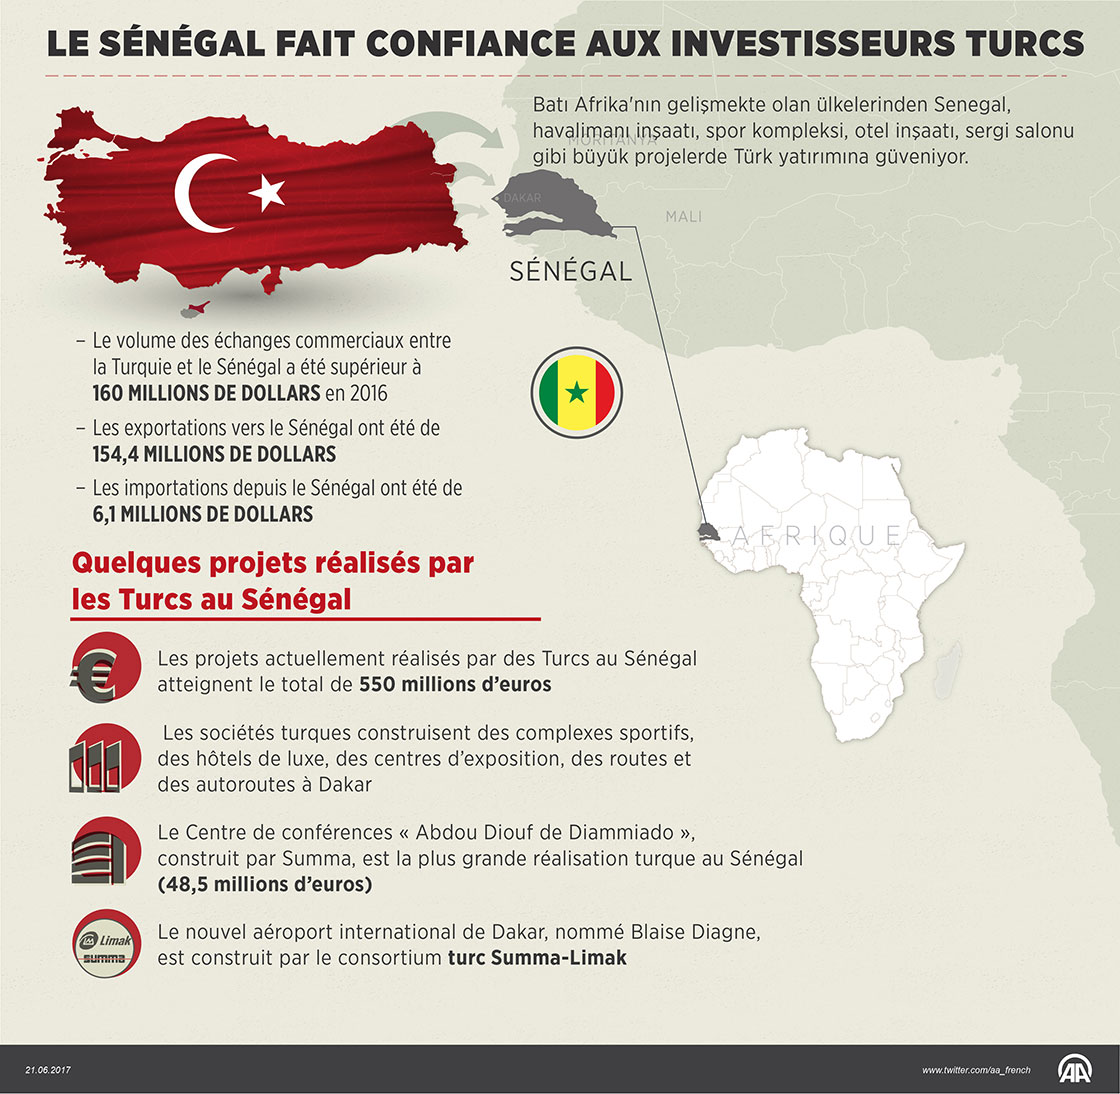 Le Sénégal fait confiance aux investisseurs turcs